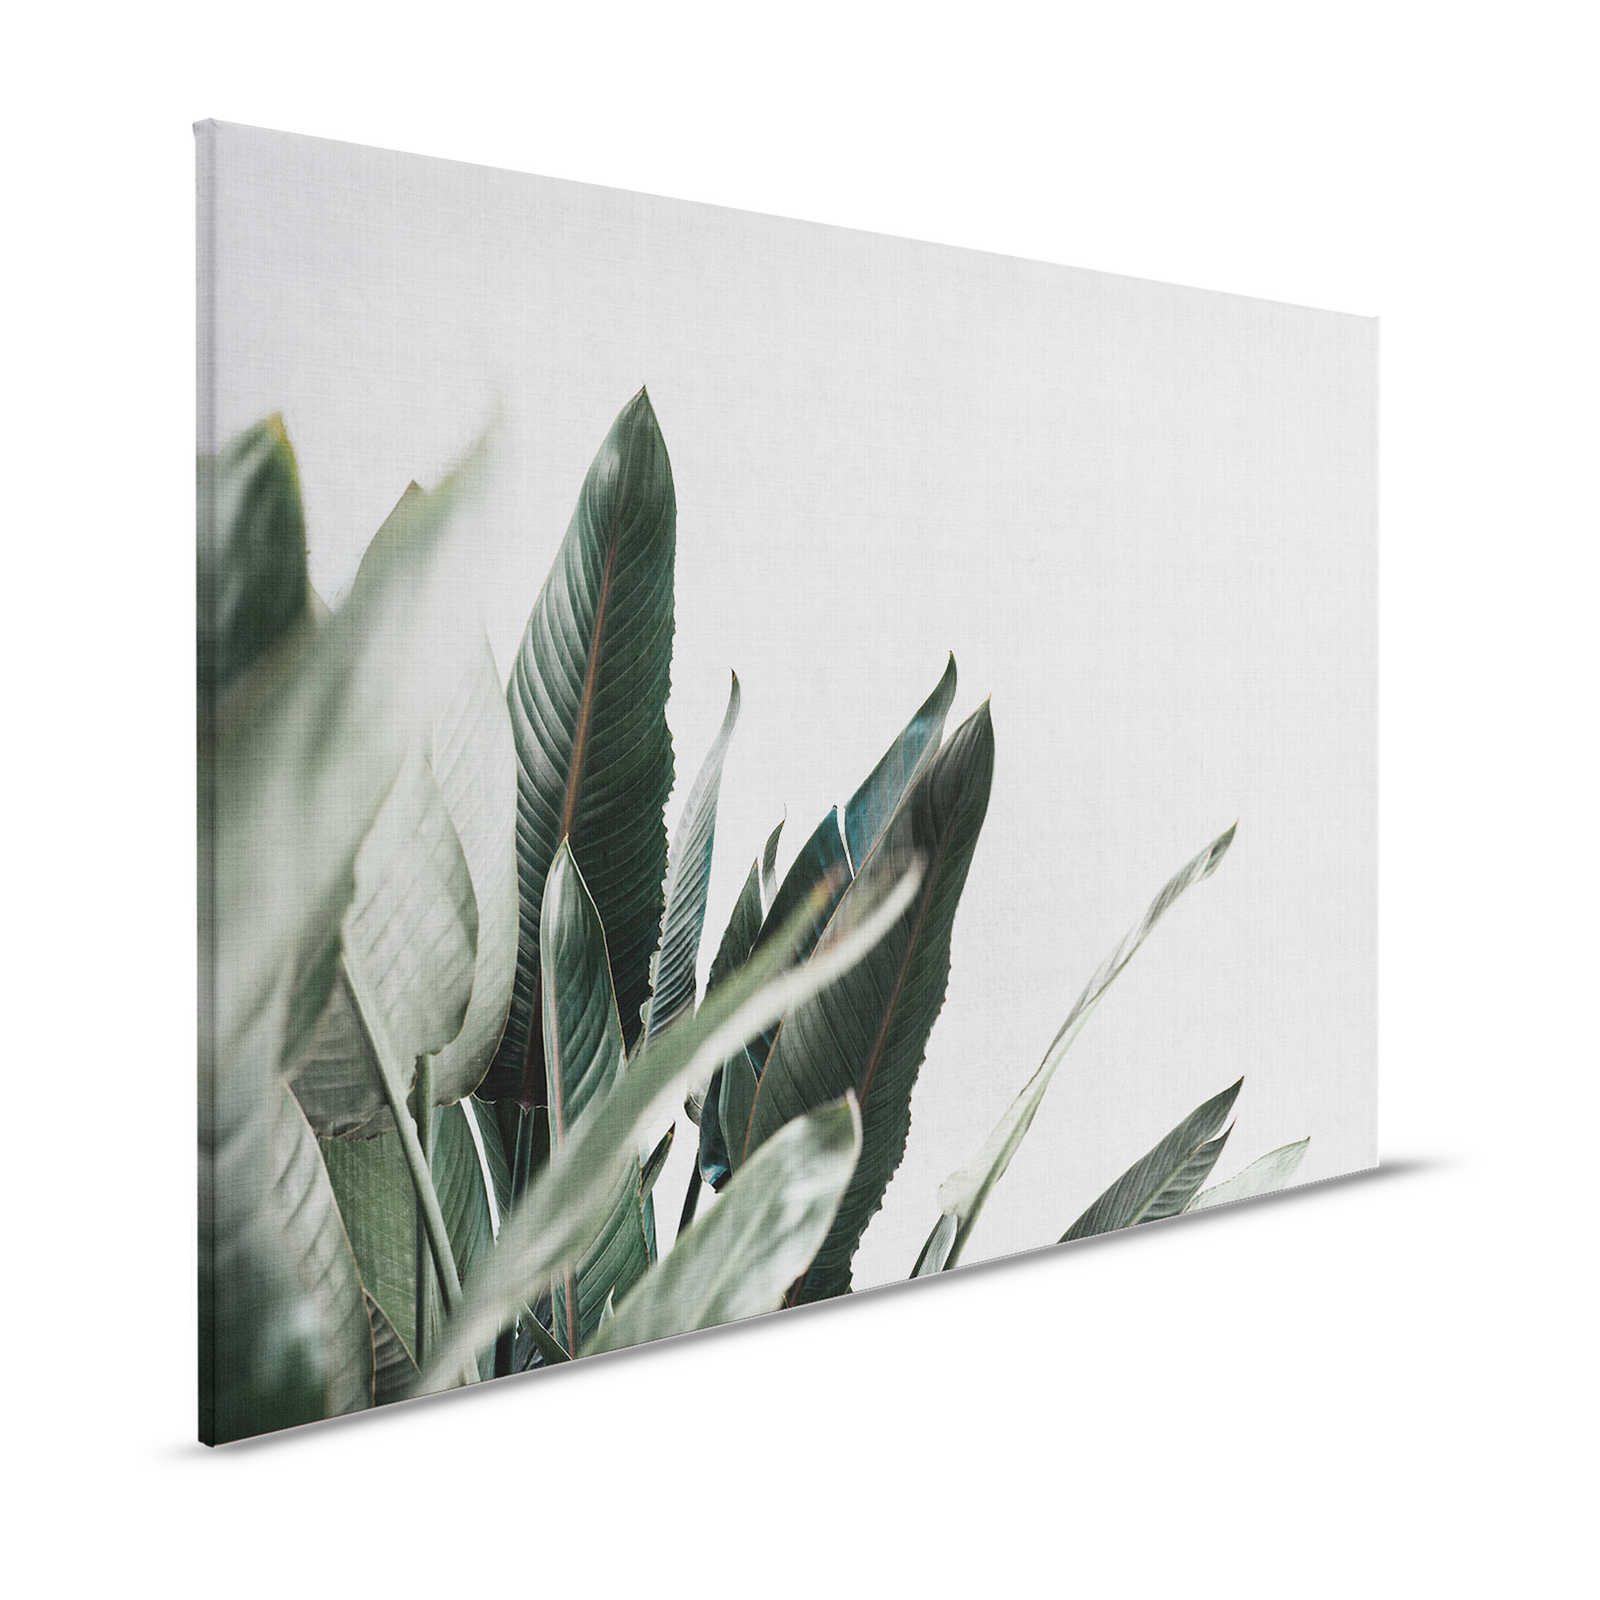 Urban jungle 1 - Canvas schilderij met palmbladeren in natuurlijke linnenlook - 1.20 m x 0.80 m
